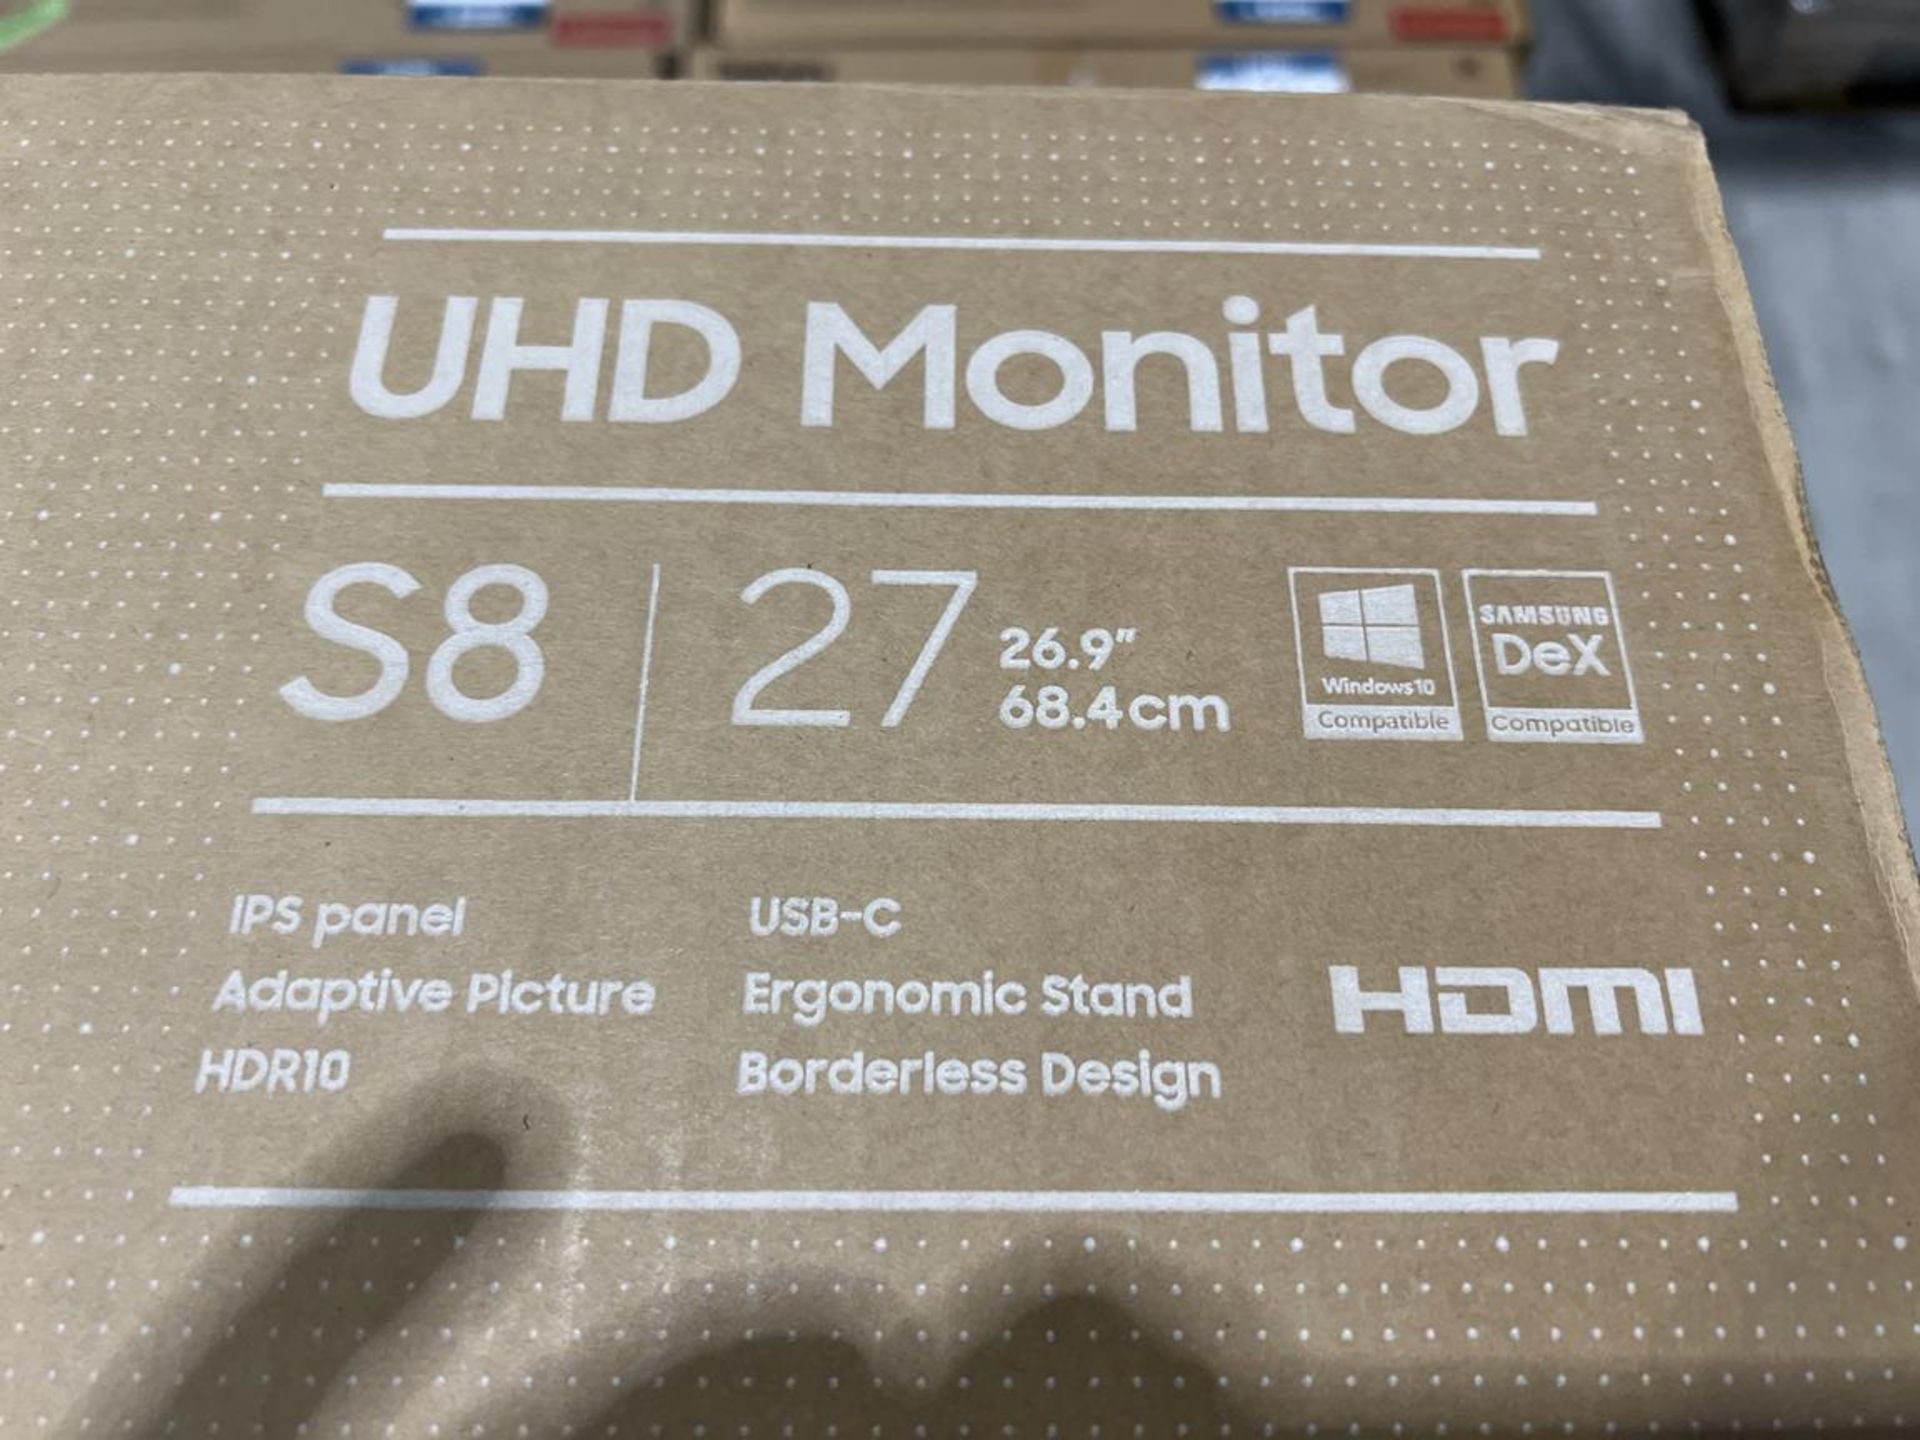 7x (no.) Samsung, S8 27" UHB monitor - Image 5 of 5